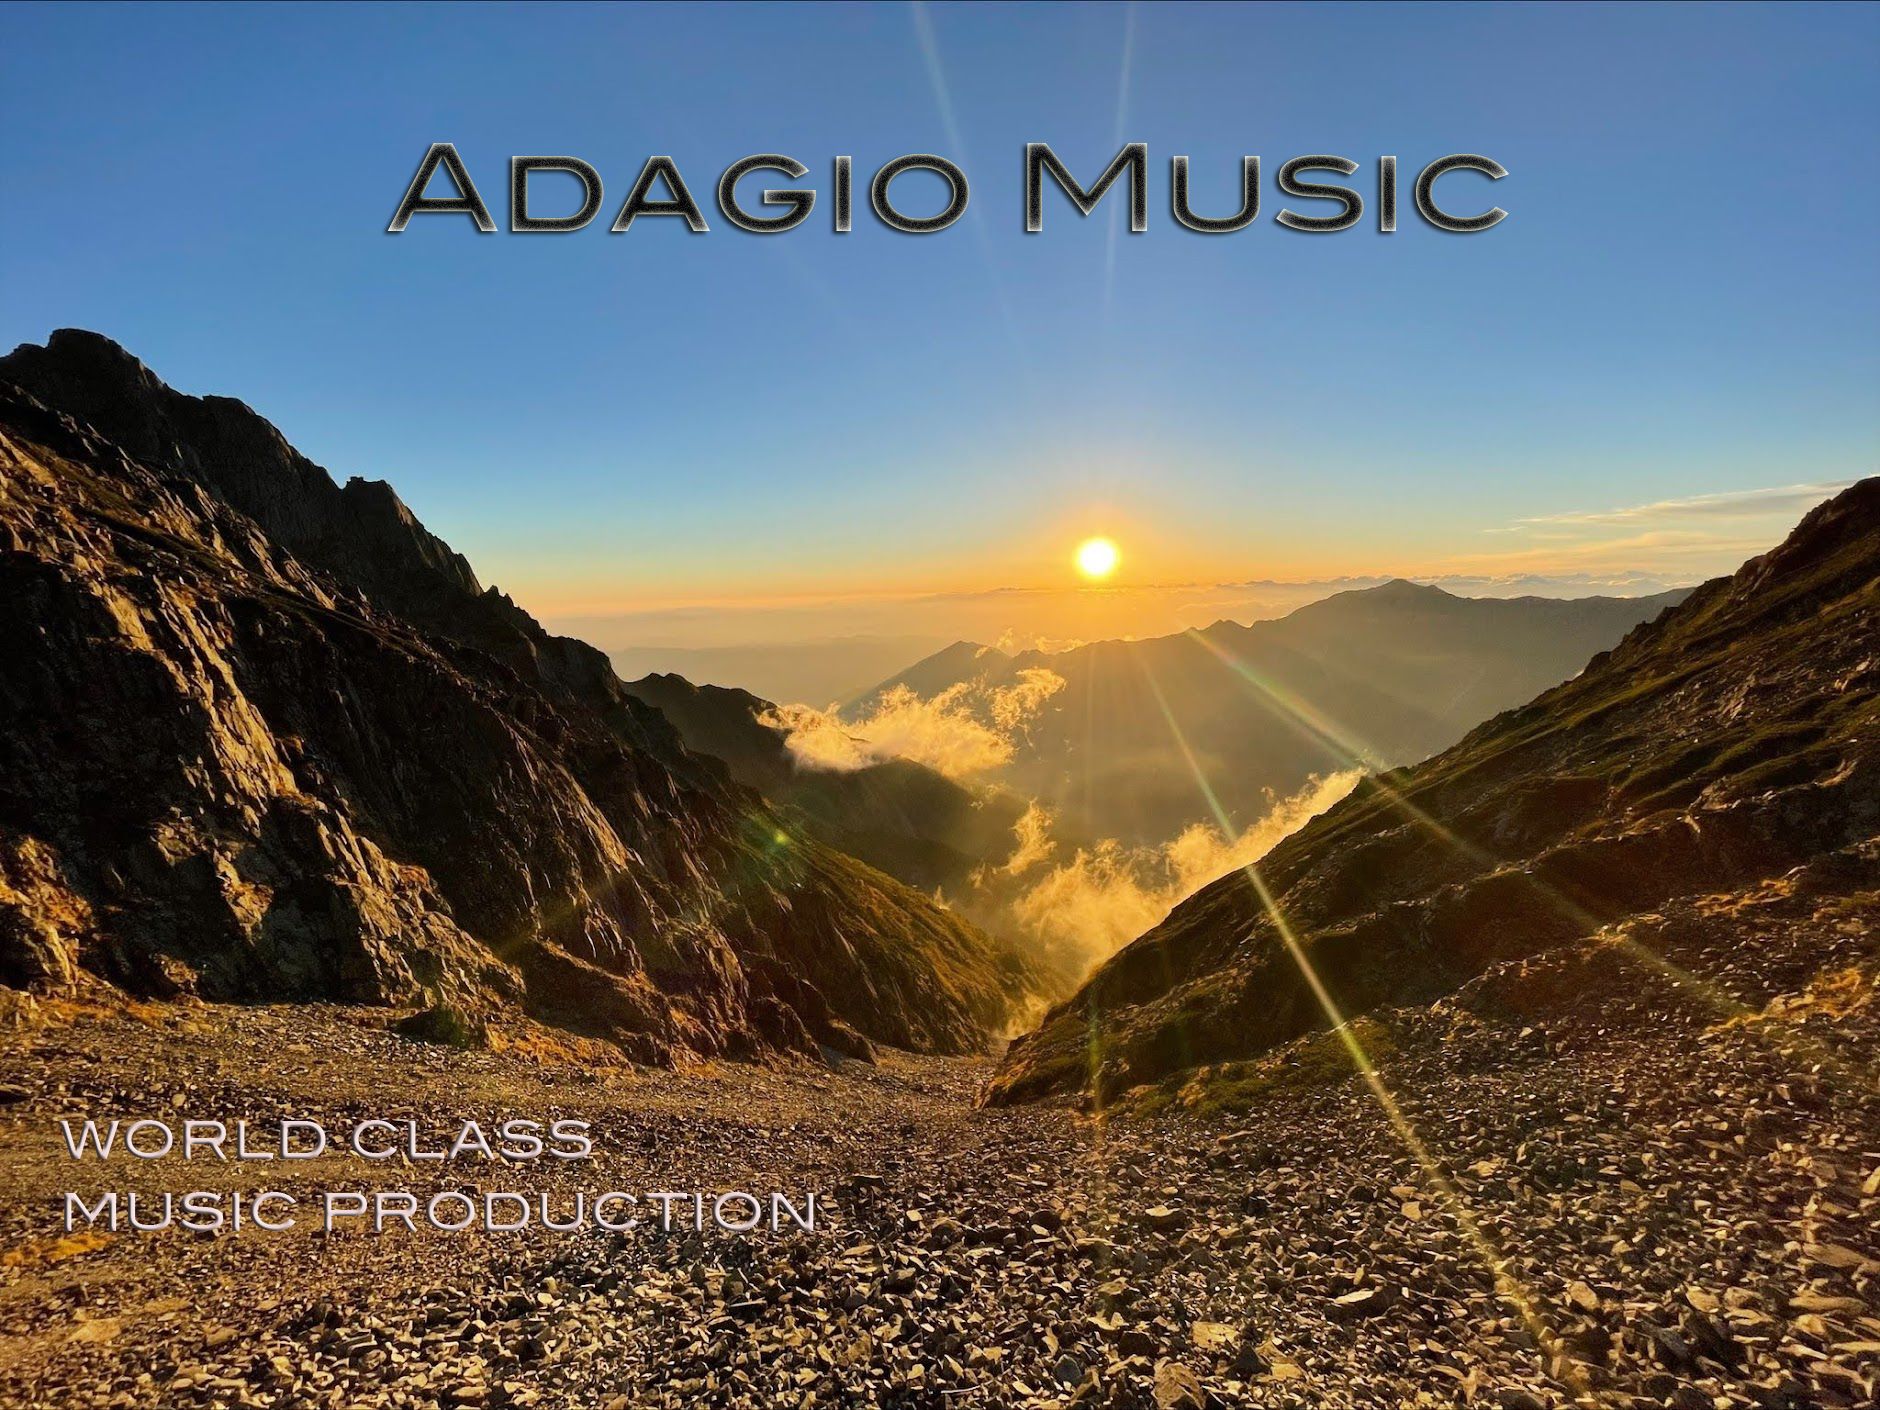 Adagio Music